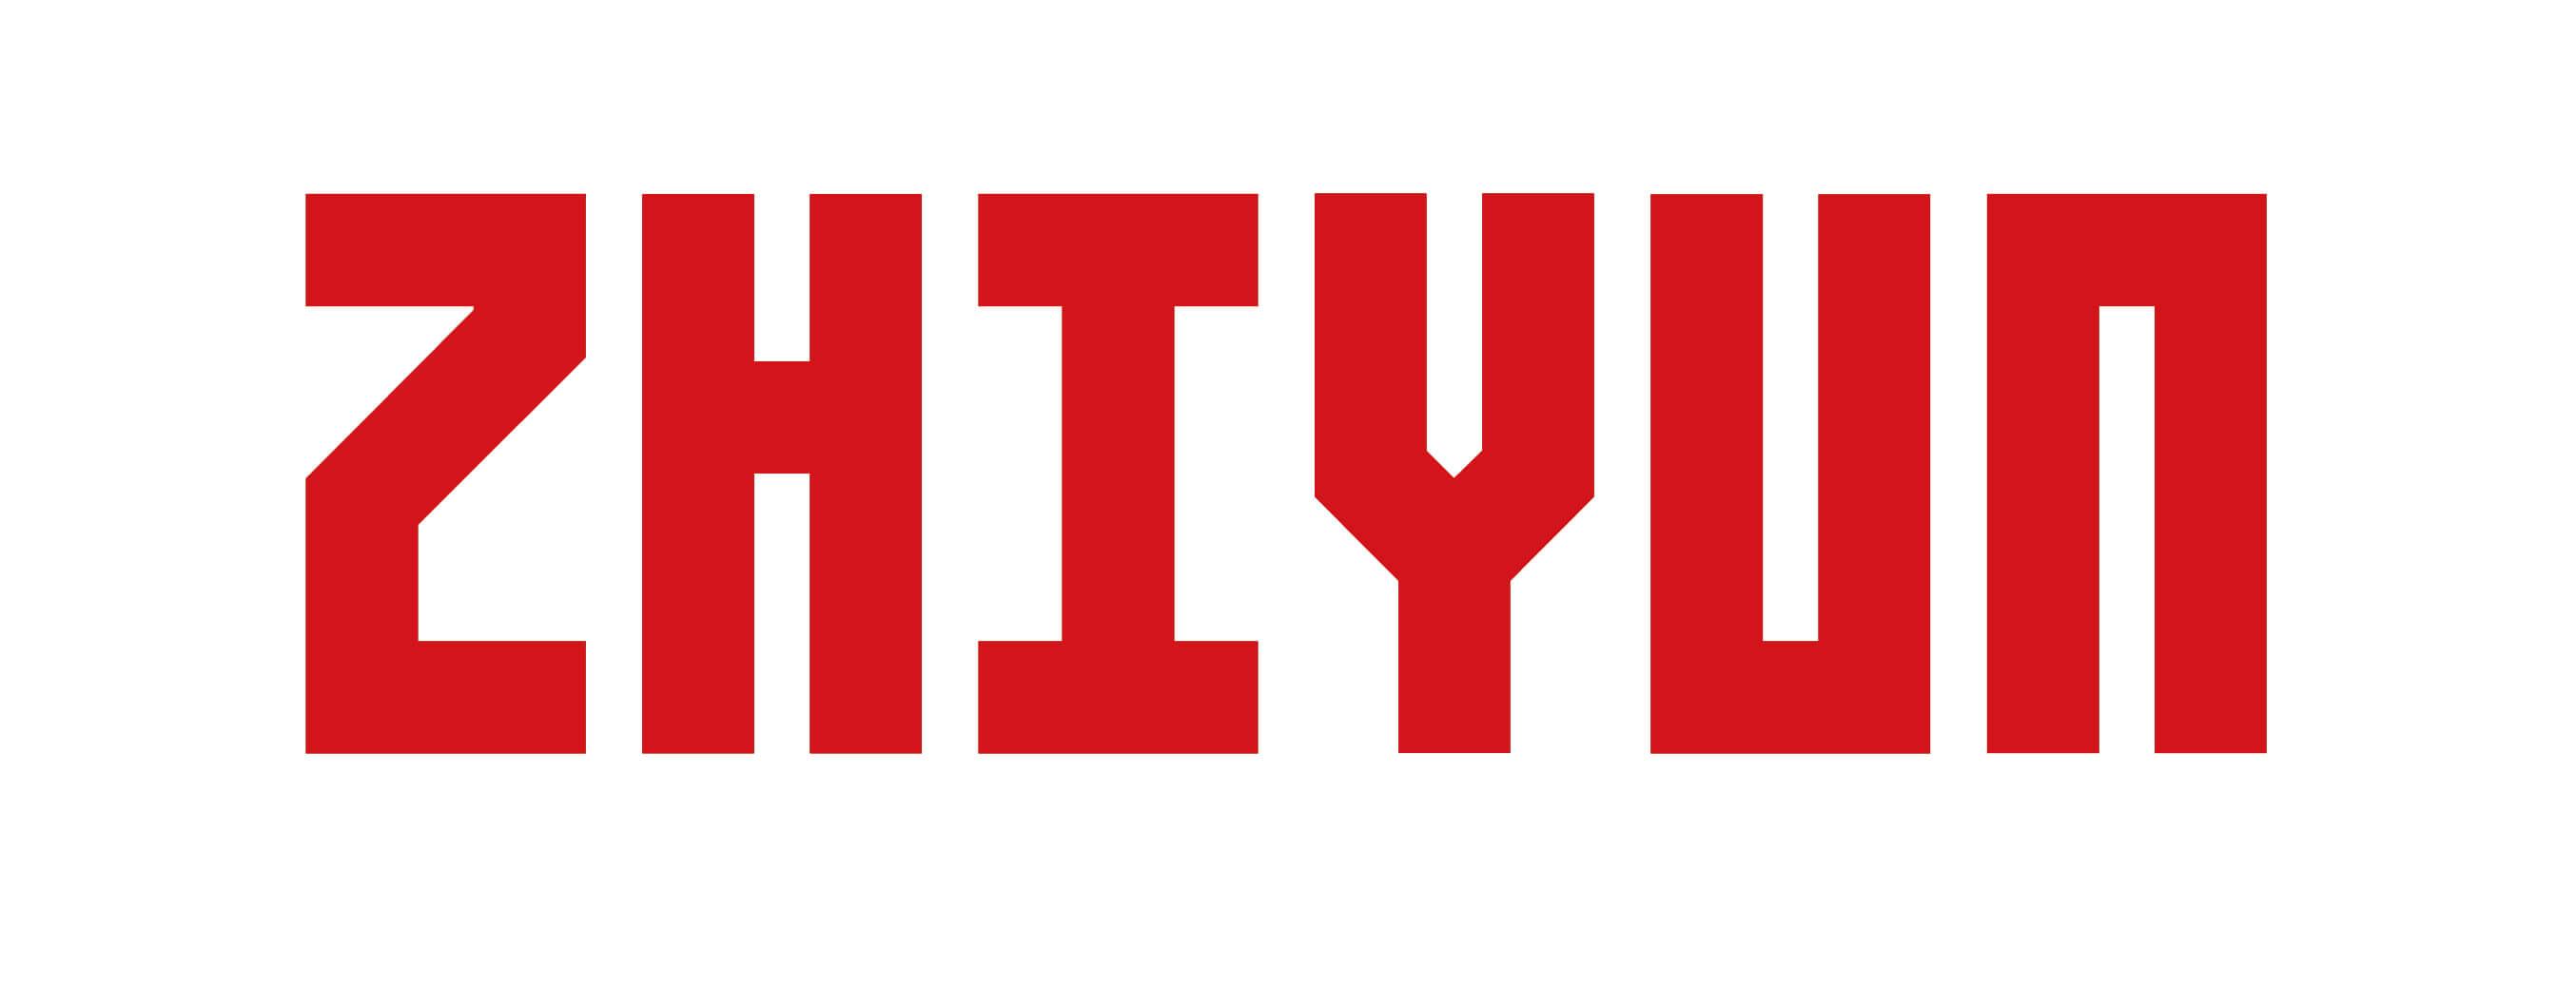 zhiyun logo.jpg (81 KB)